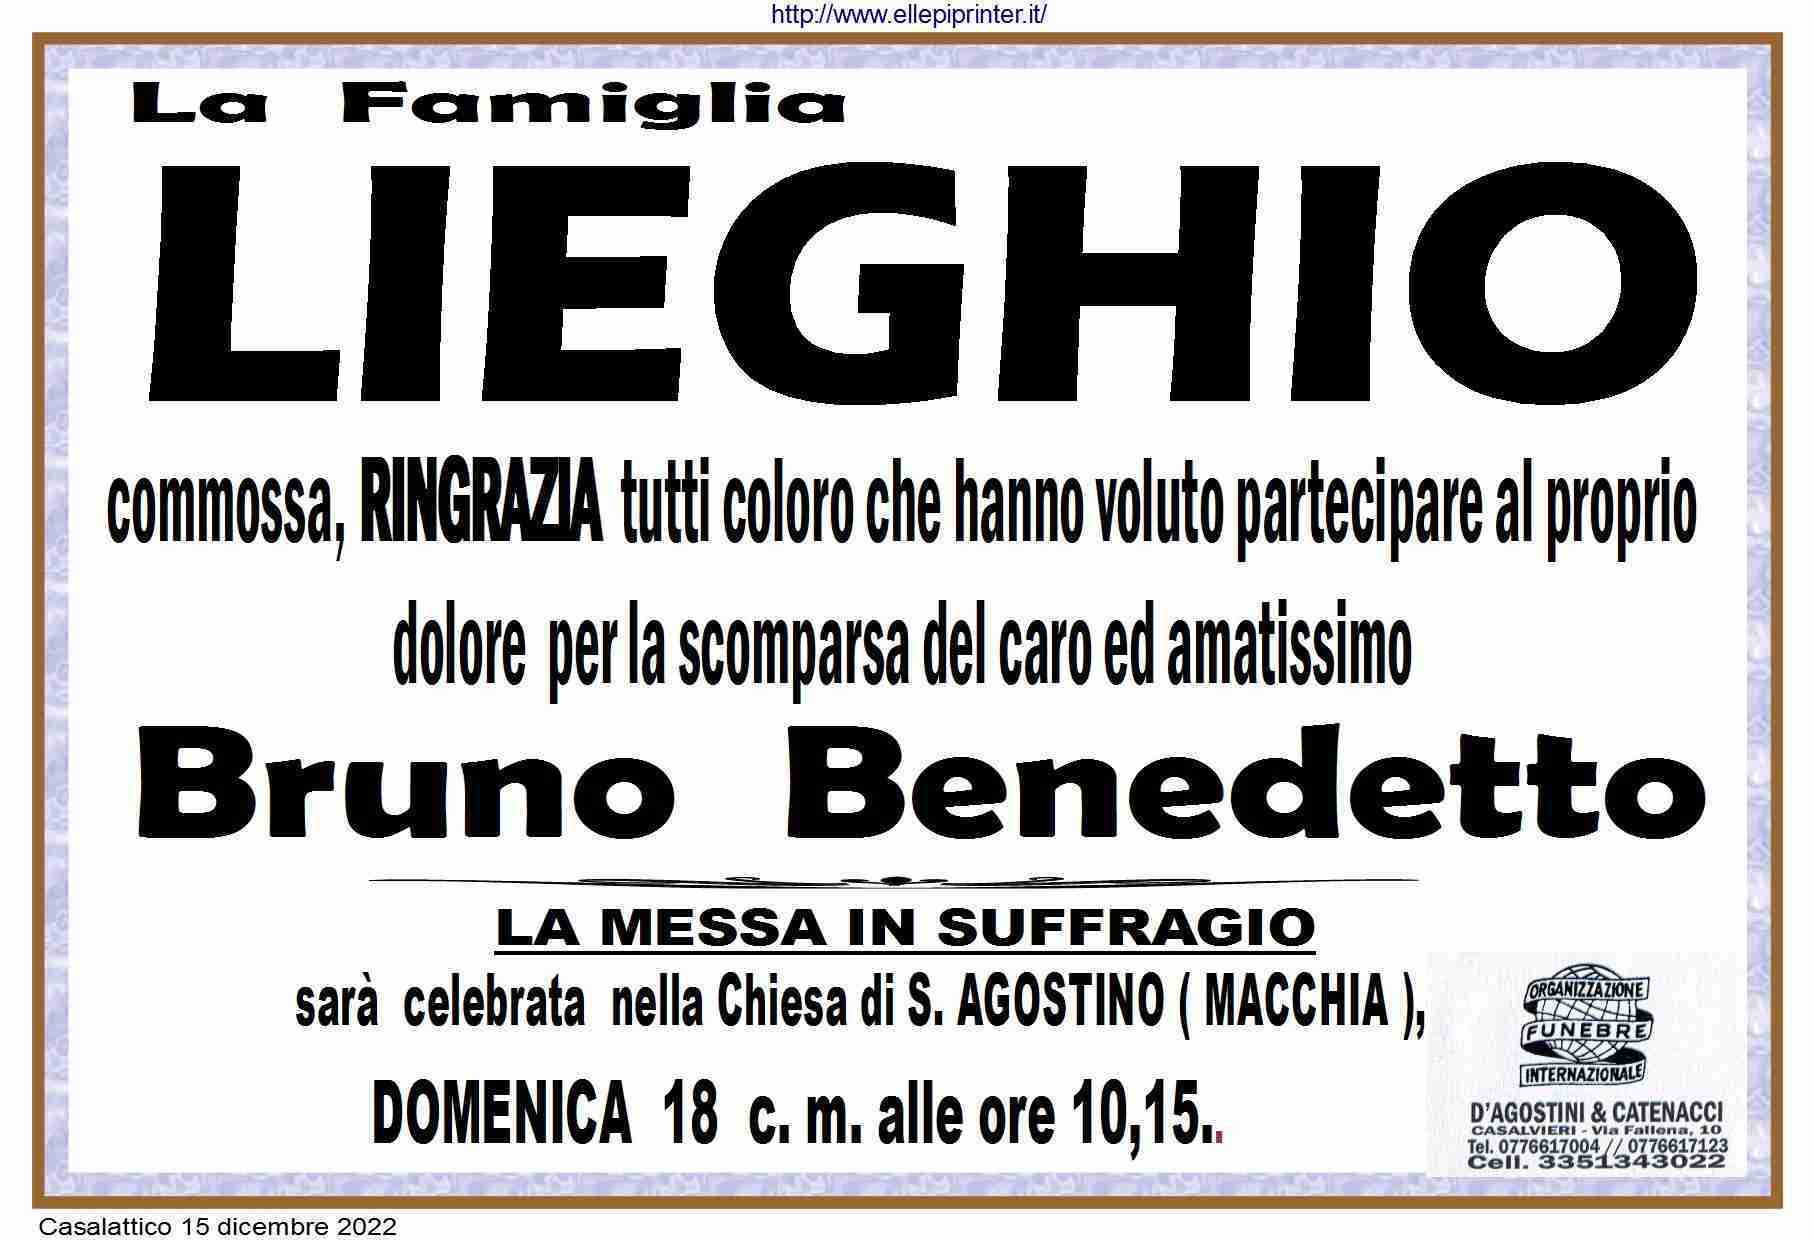 Bruno Benedetto Lieghio